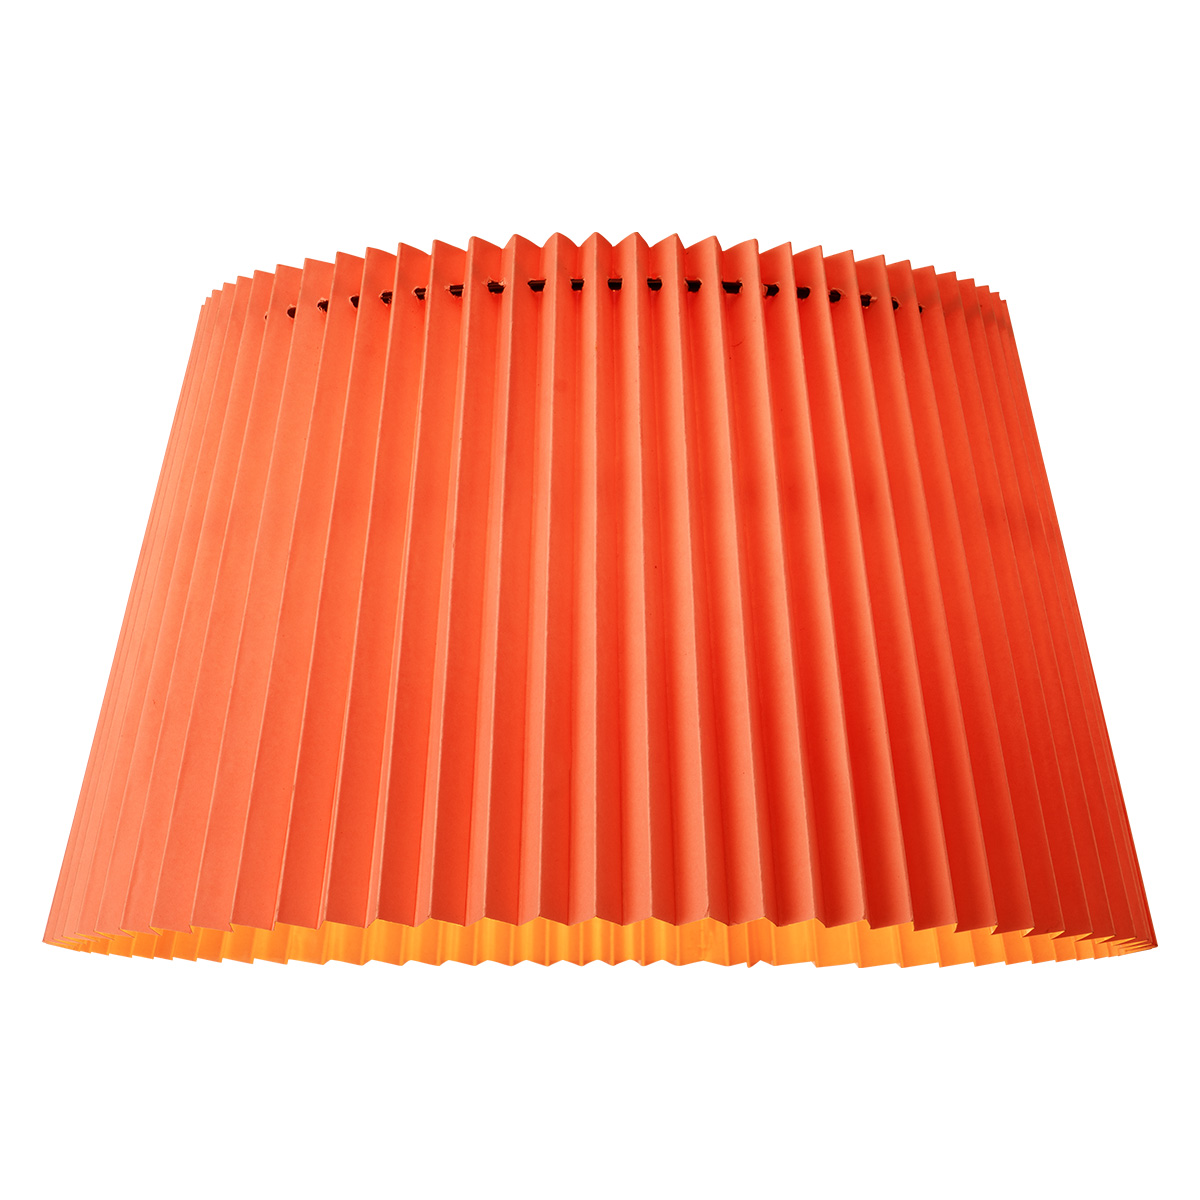 Tangla Lighting - Lampshade - metal and paper - red - taper - diameter 40cm - E27